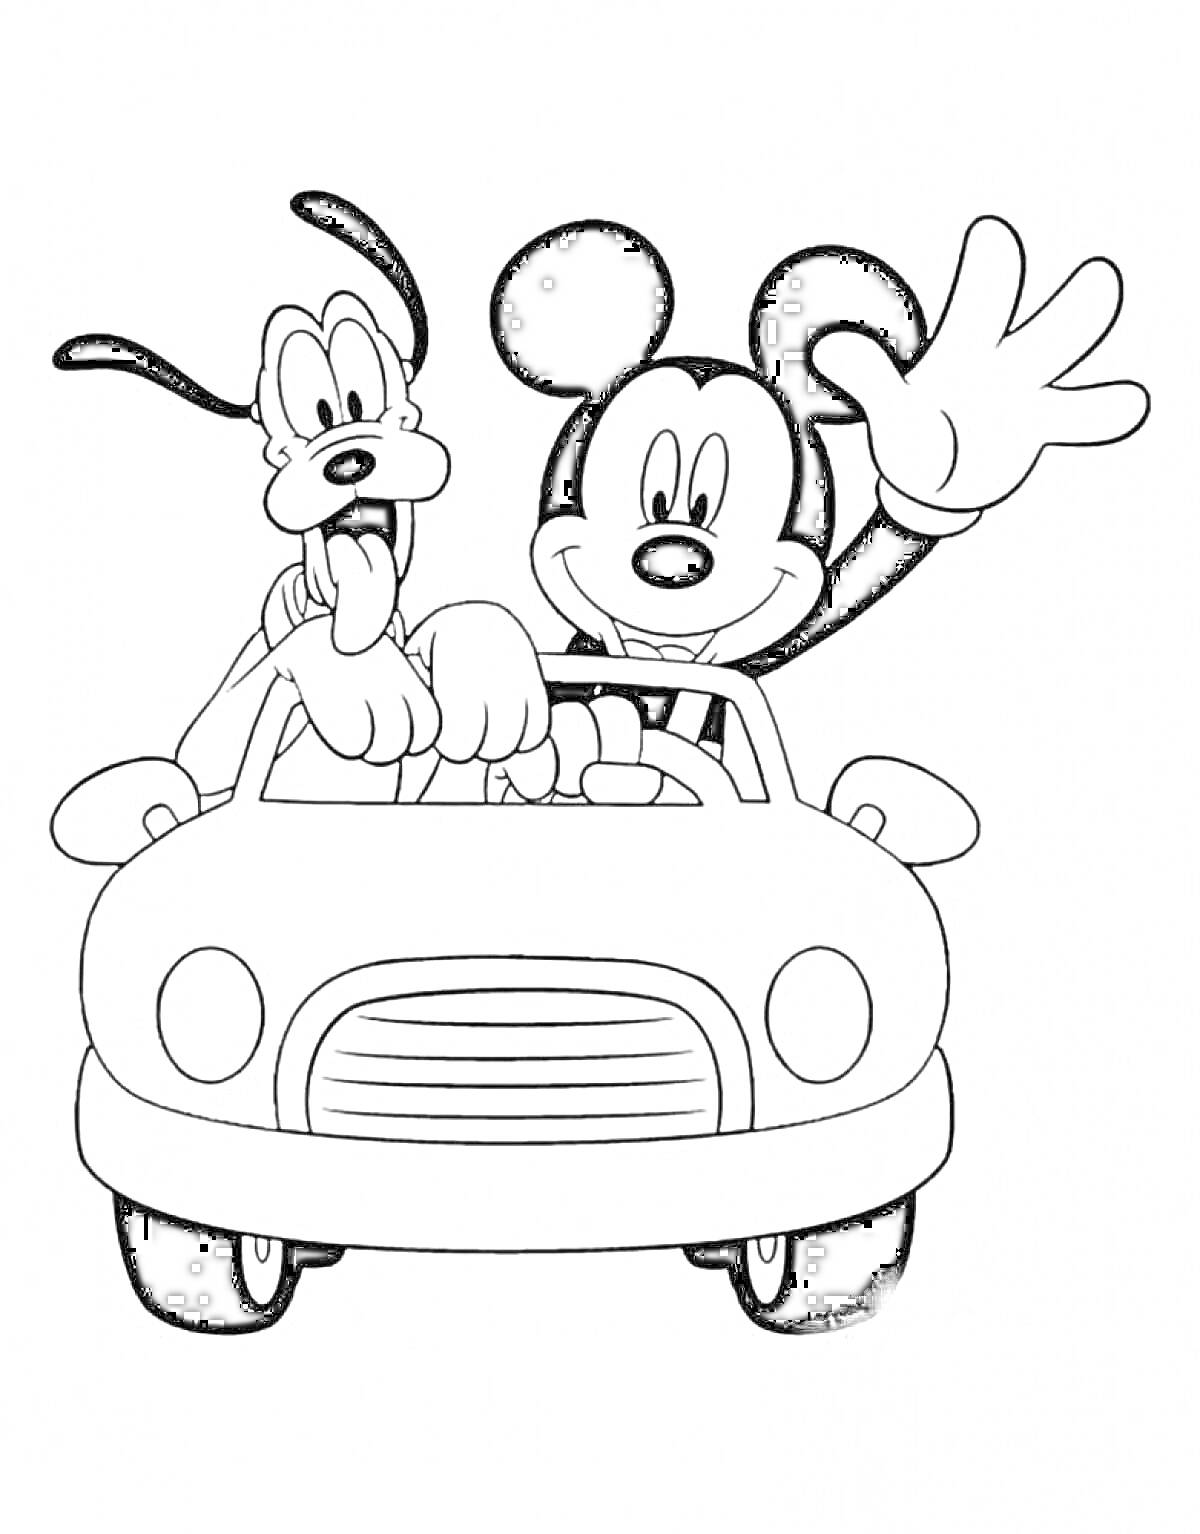 Микки Маус и Плуто в машине, Микки Маус машет рукой